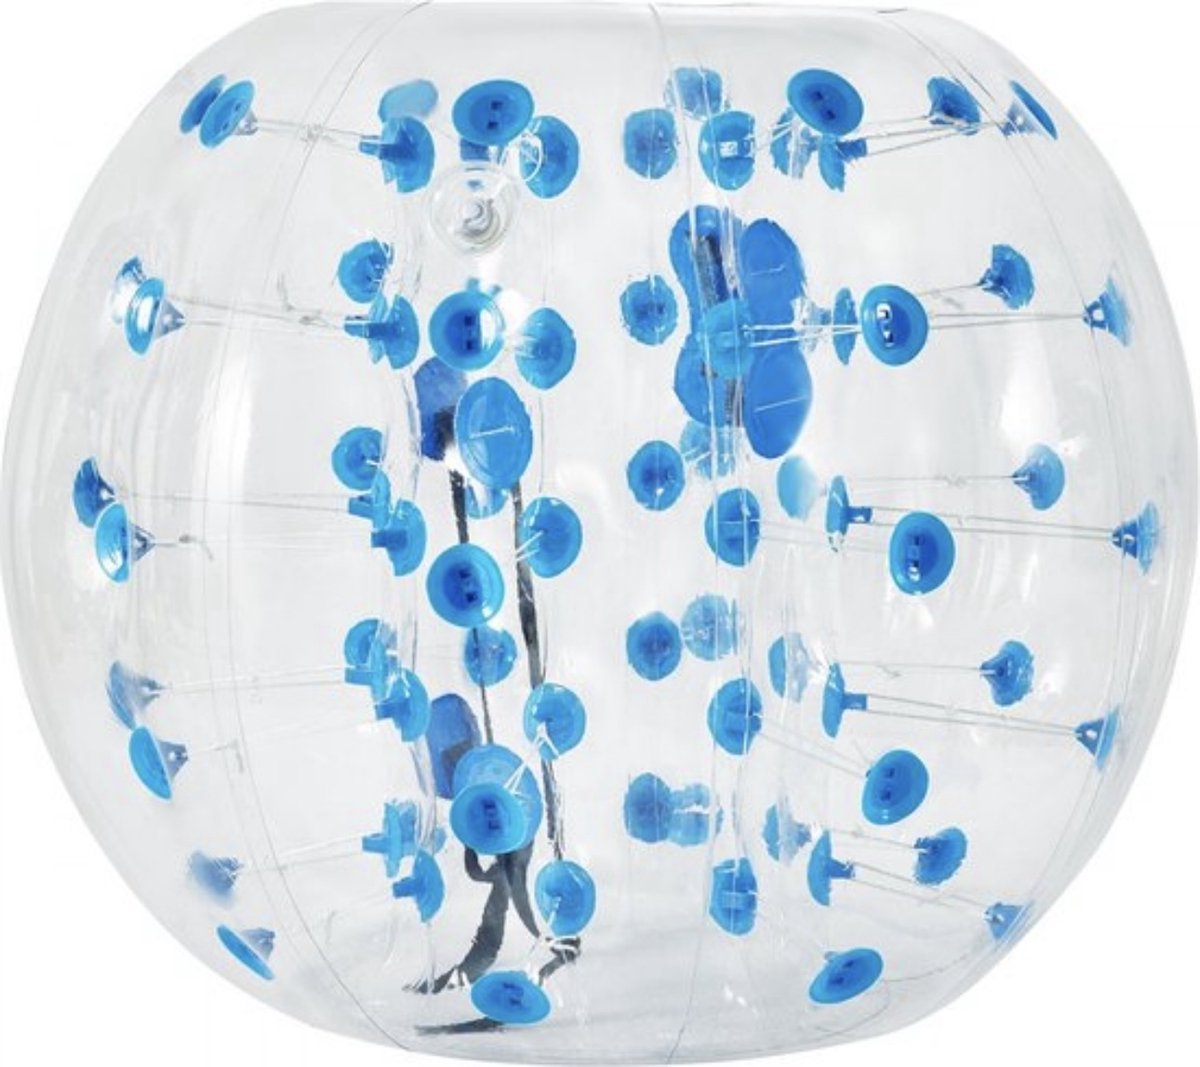 HDJ Opblaasbare Bumper Bal - Blauw - Bubble Voetbal - Snel Opblaasbaar - Duurzaam en Veilig - Bubble Voetbal in 5 Min Opgeblazen - Opblaasbare Zorb Bal voor Onvergetelijke Plezier - Blauw - Feesten - Voor Kinderen - voor Volwassenen - HDJ